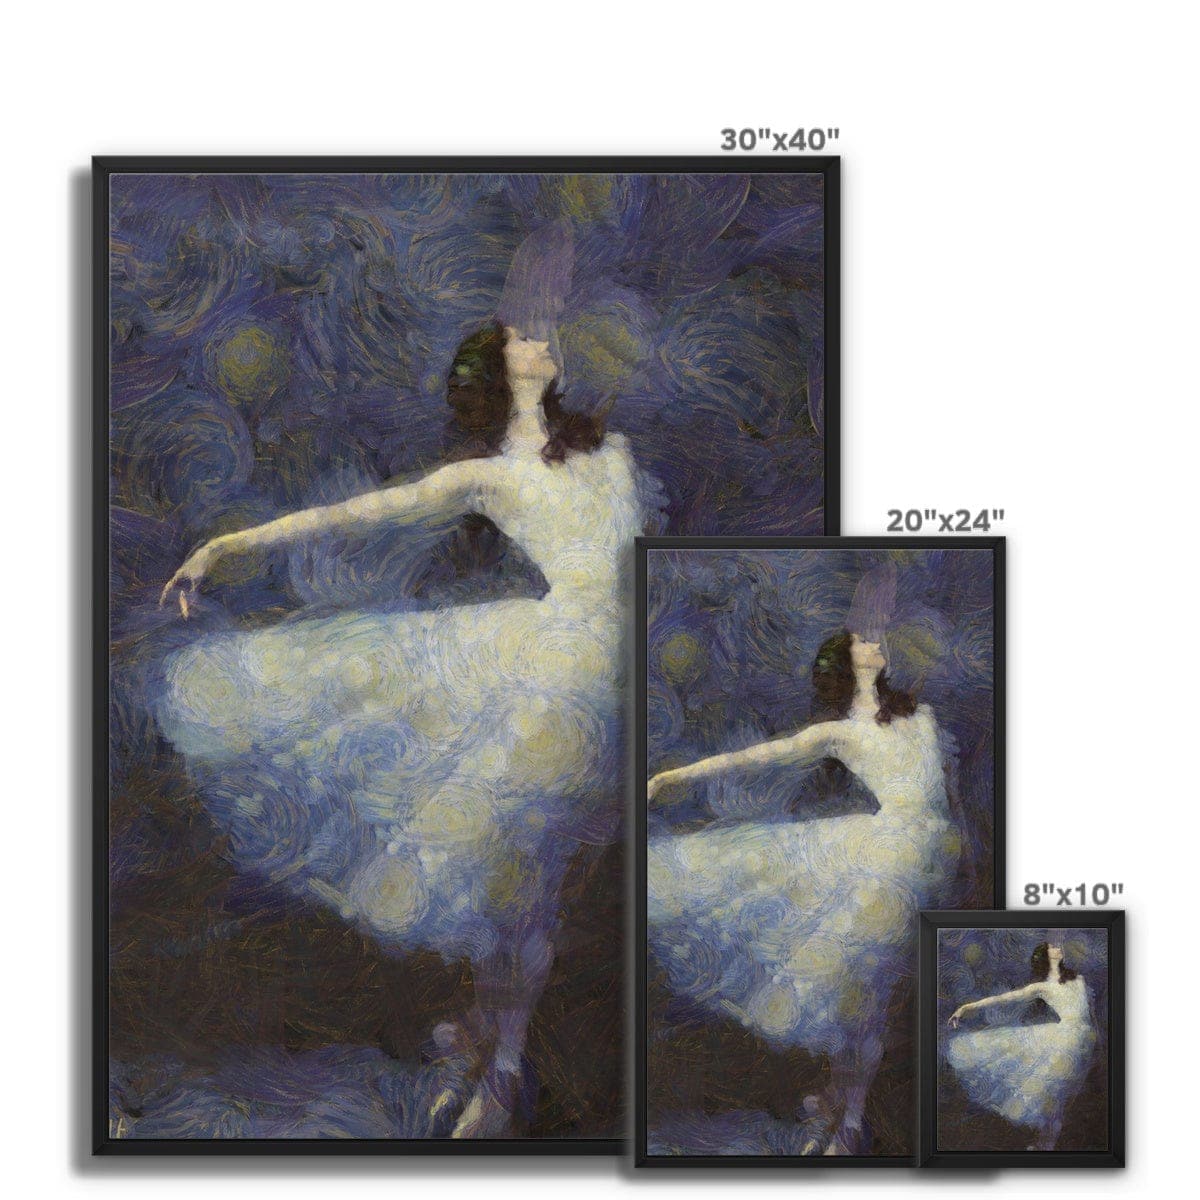 Fairy Dance - Ballerina White Dress Framed Canvas